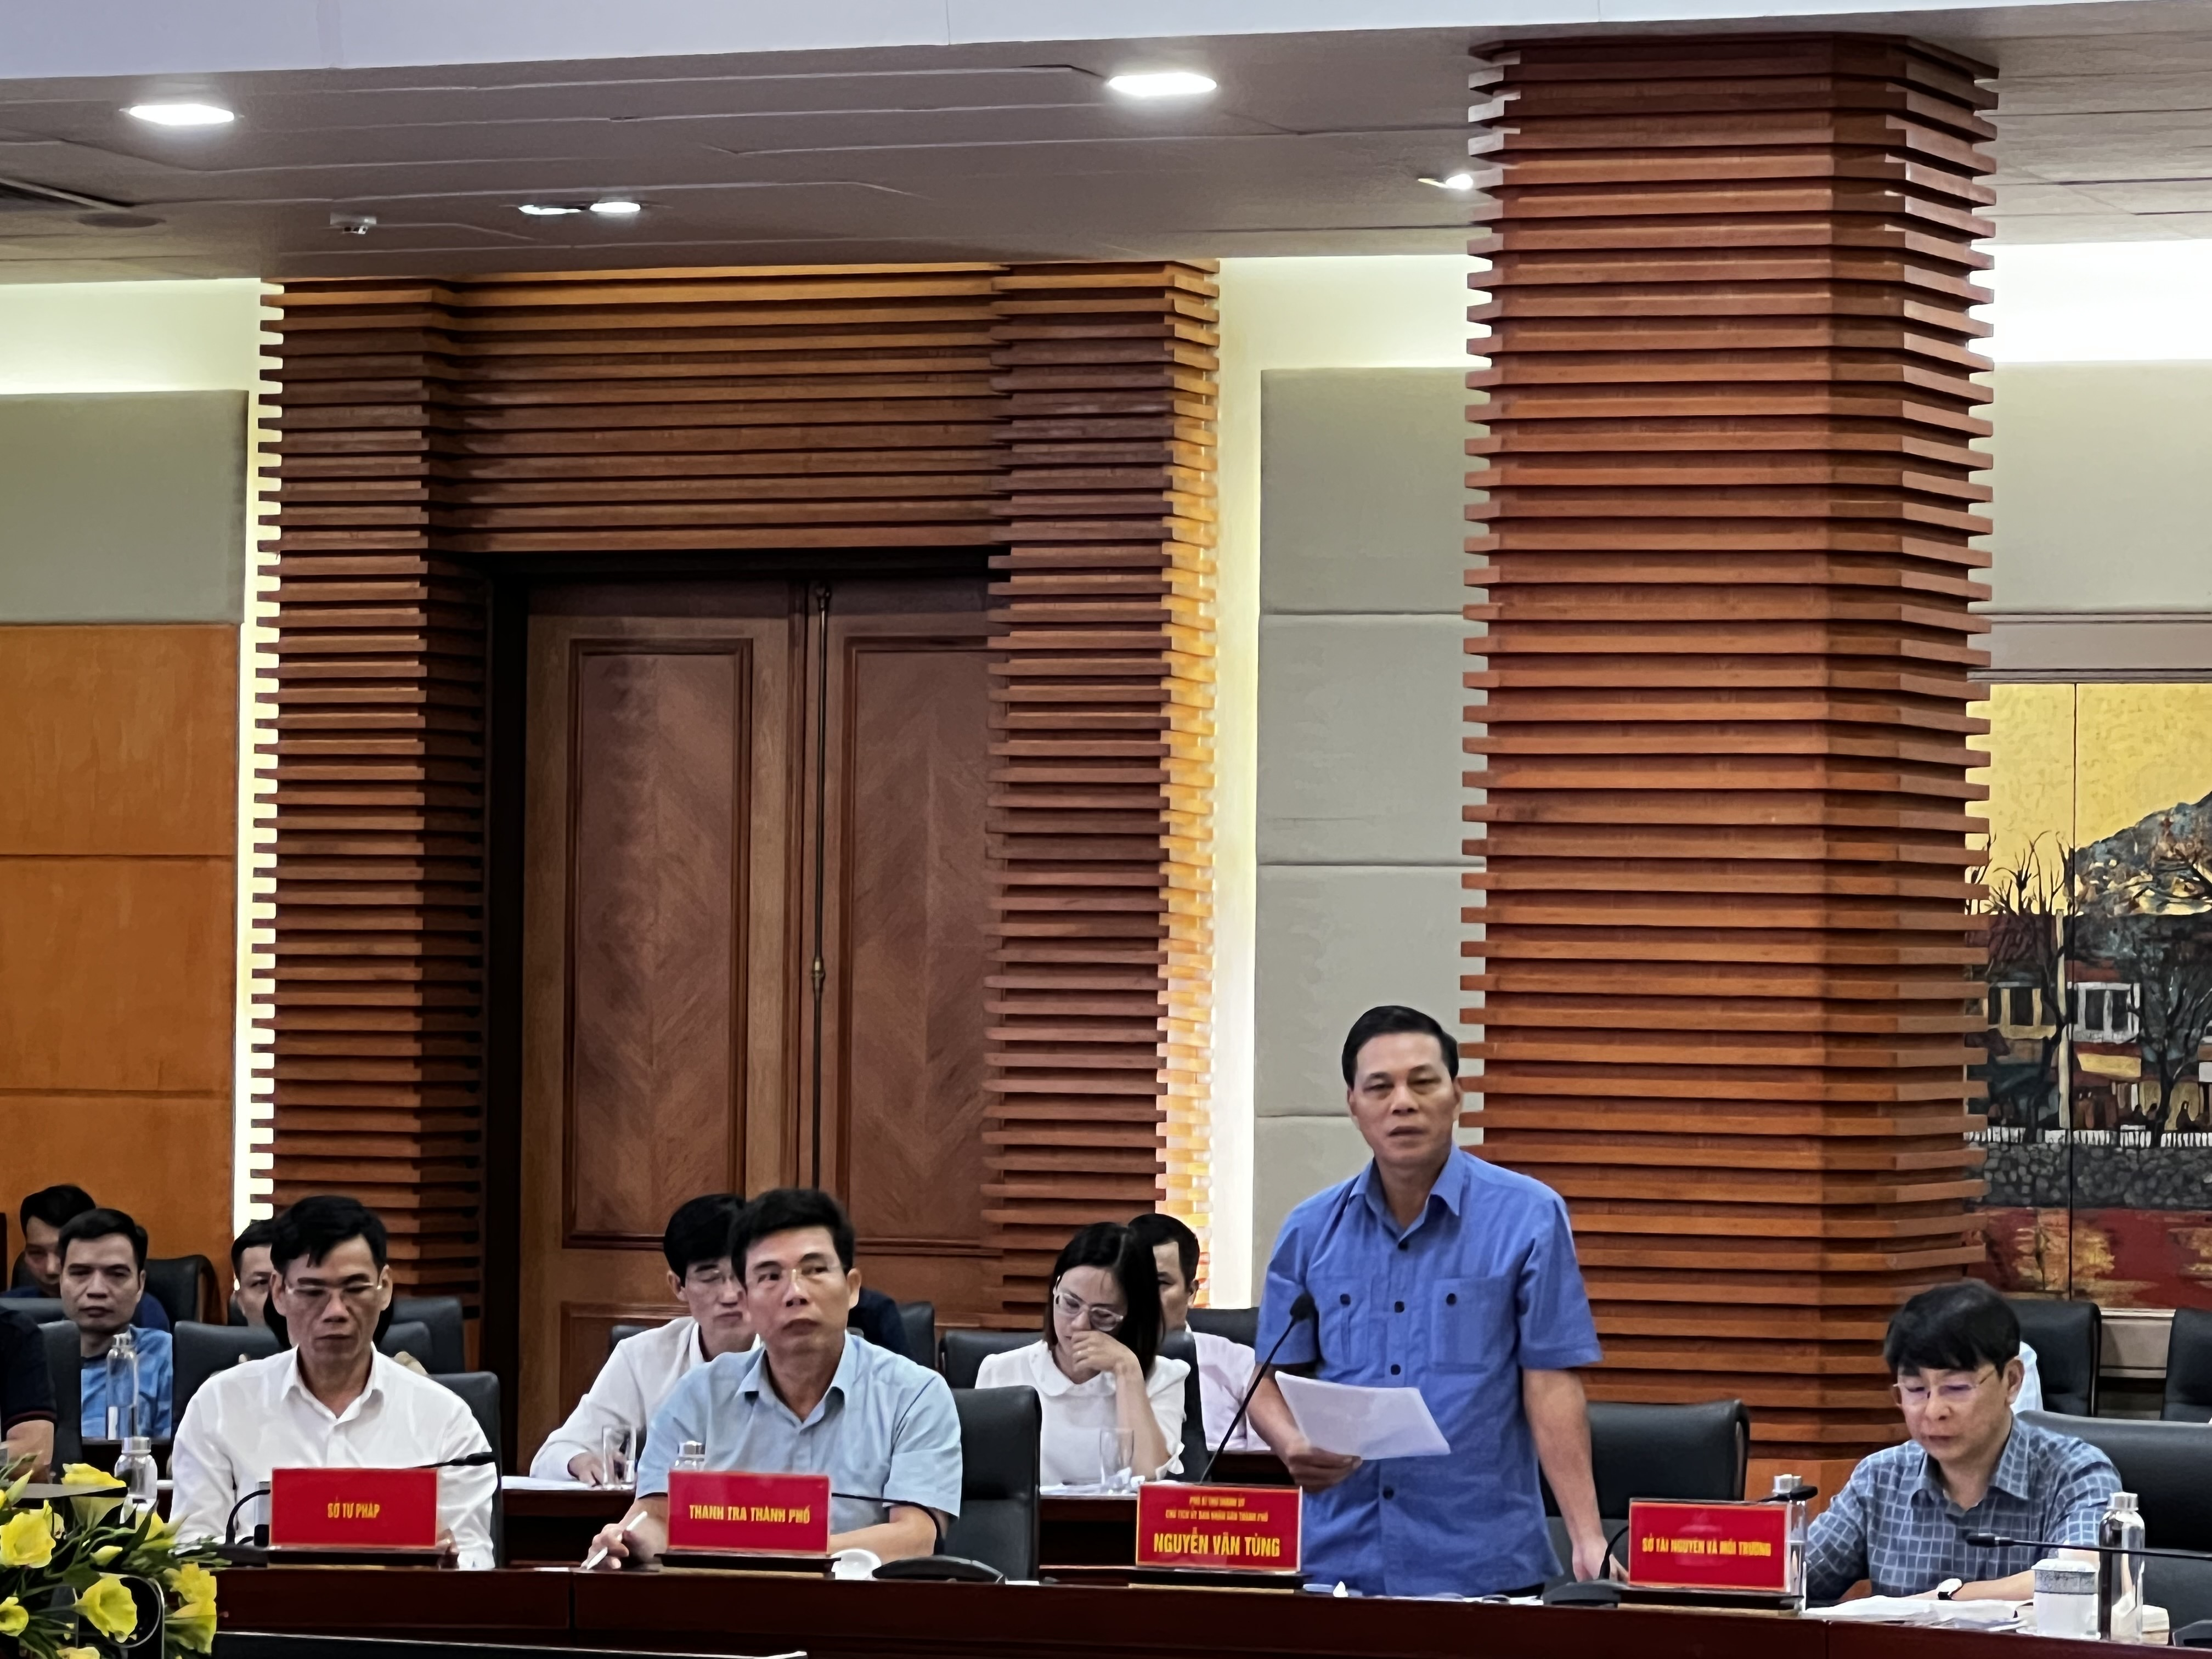 Chủ tịch UBND TP Nguyễn Văn Tùng chủ trì làm việc với các hộ dân liên quan đến cải tạo khu chung cư cũ phường Đổng Quốc Bình.